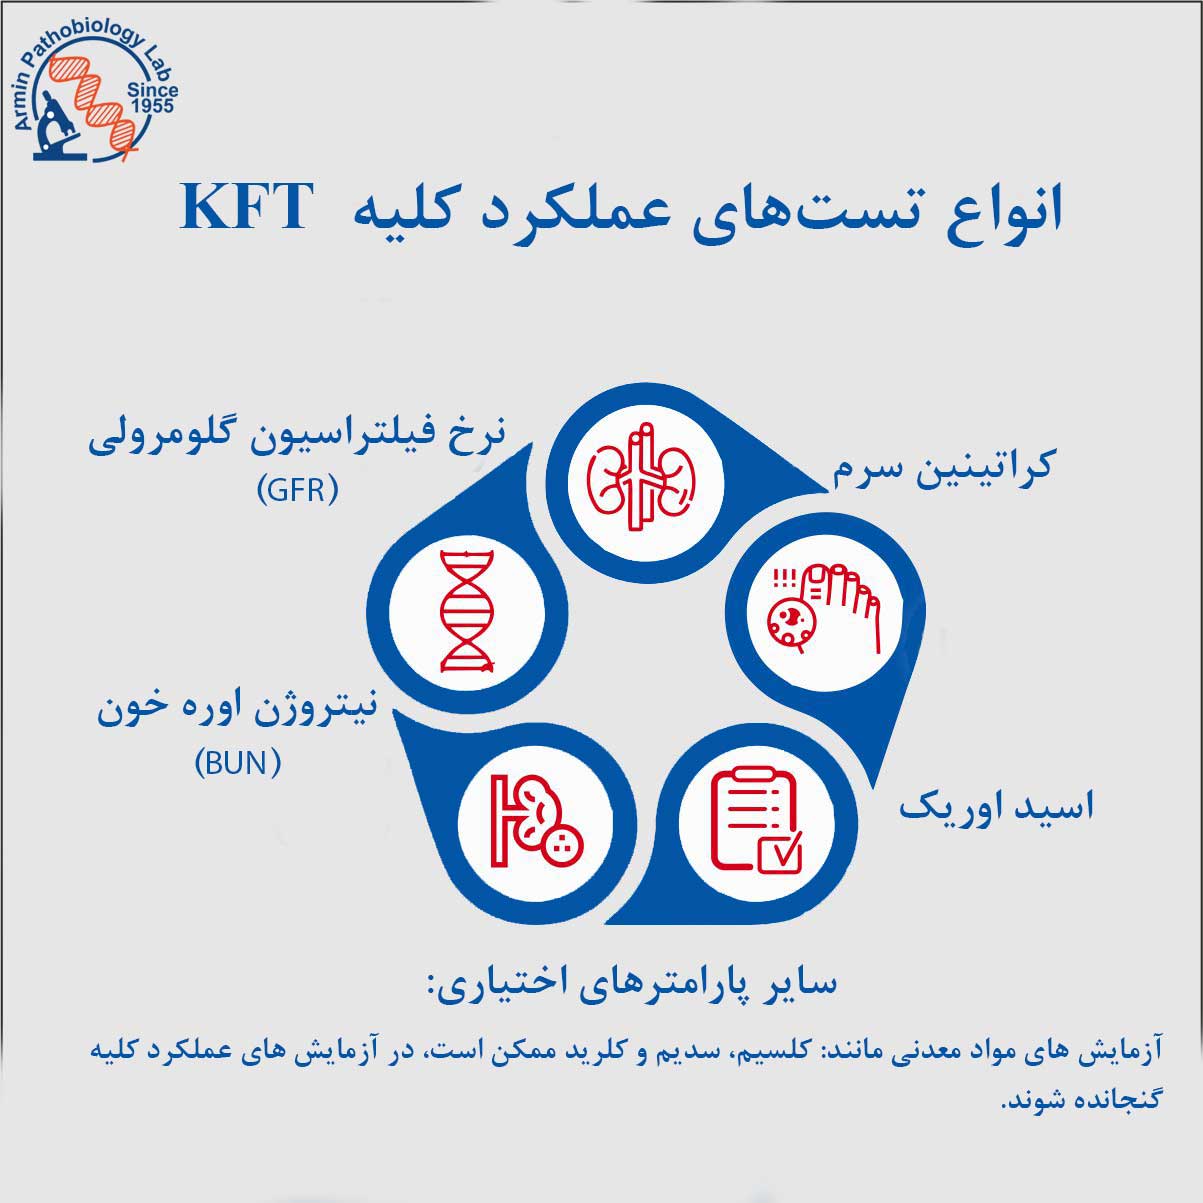 تست های عملکرد کلیه (KFT)